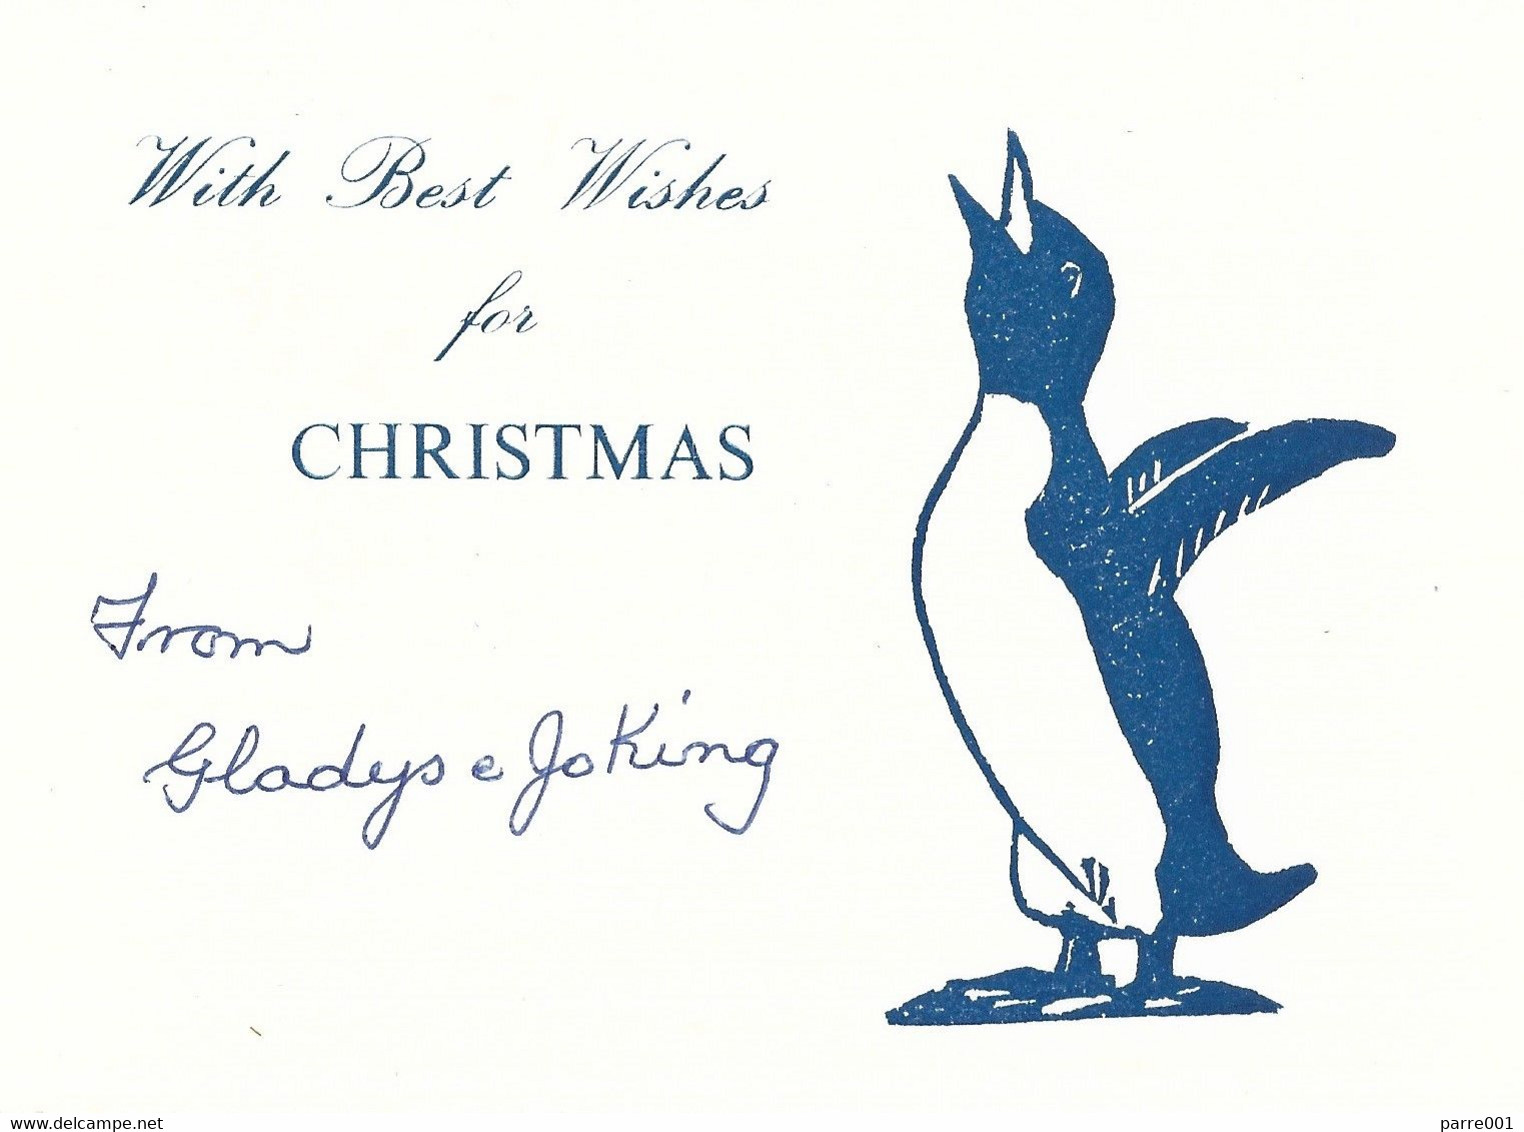 Falkland Islands Christmas Card - Falkland Islands